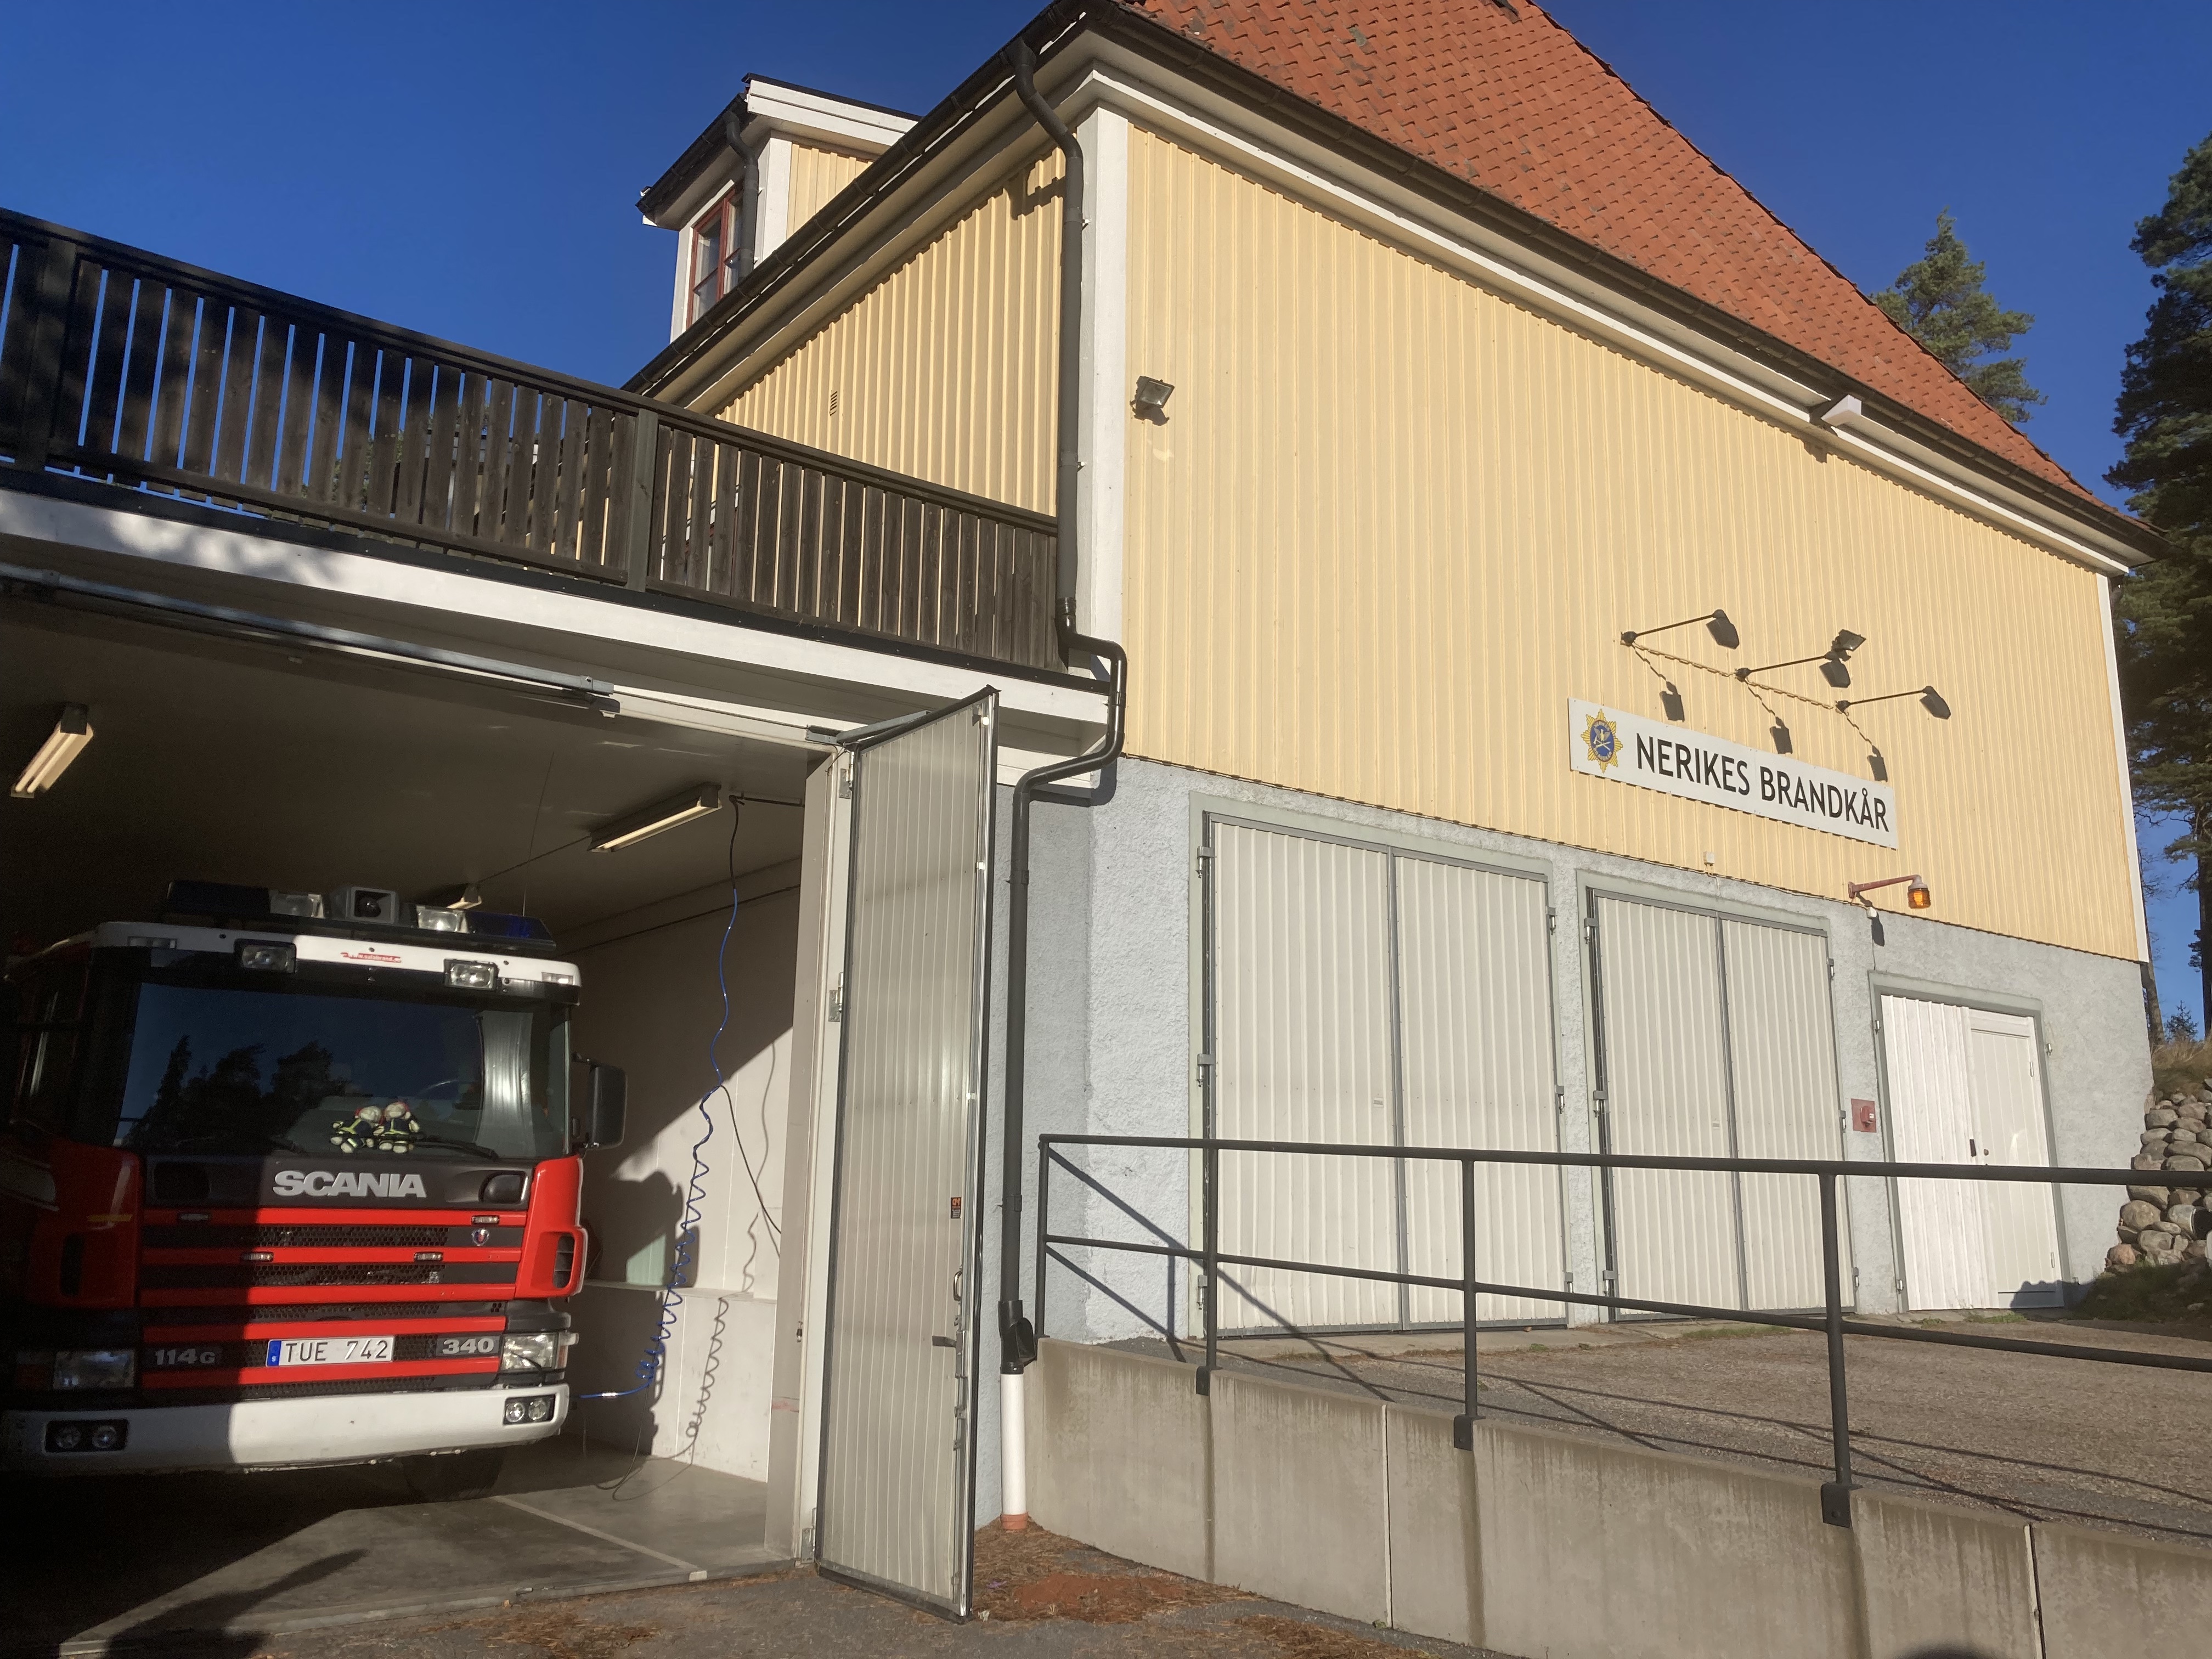 Brandkåren i Hjortkvarn är belägen under en samlingslokal, Forum.